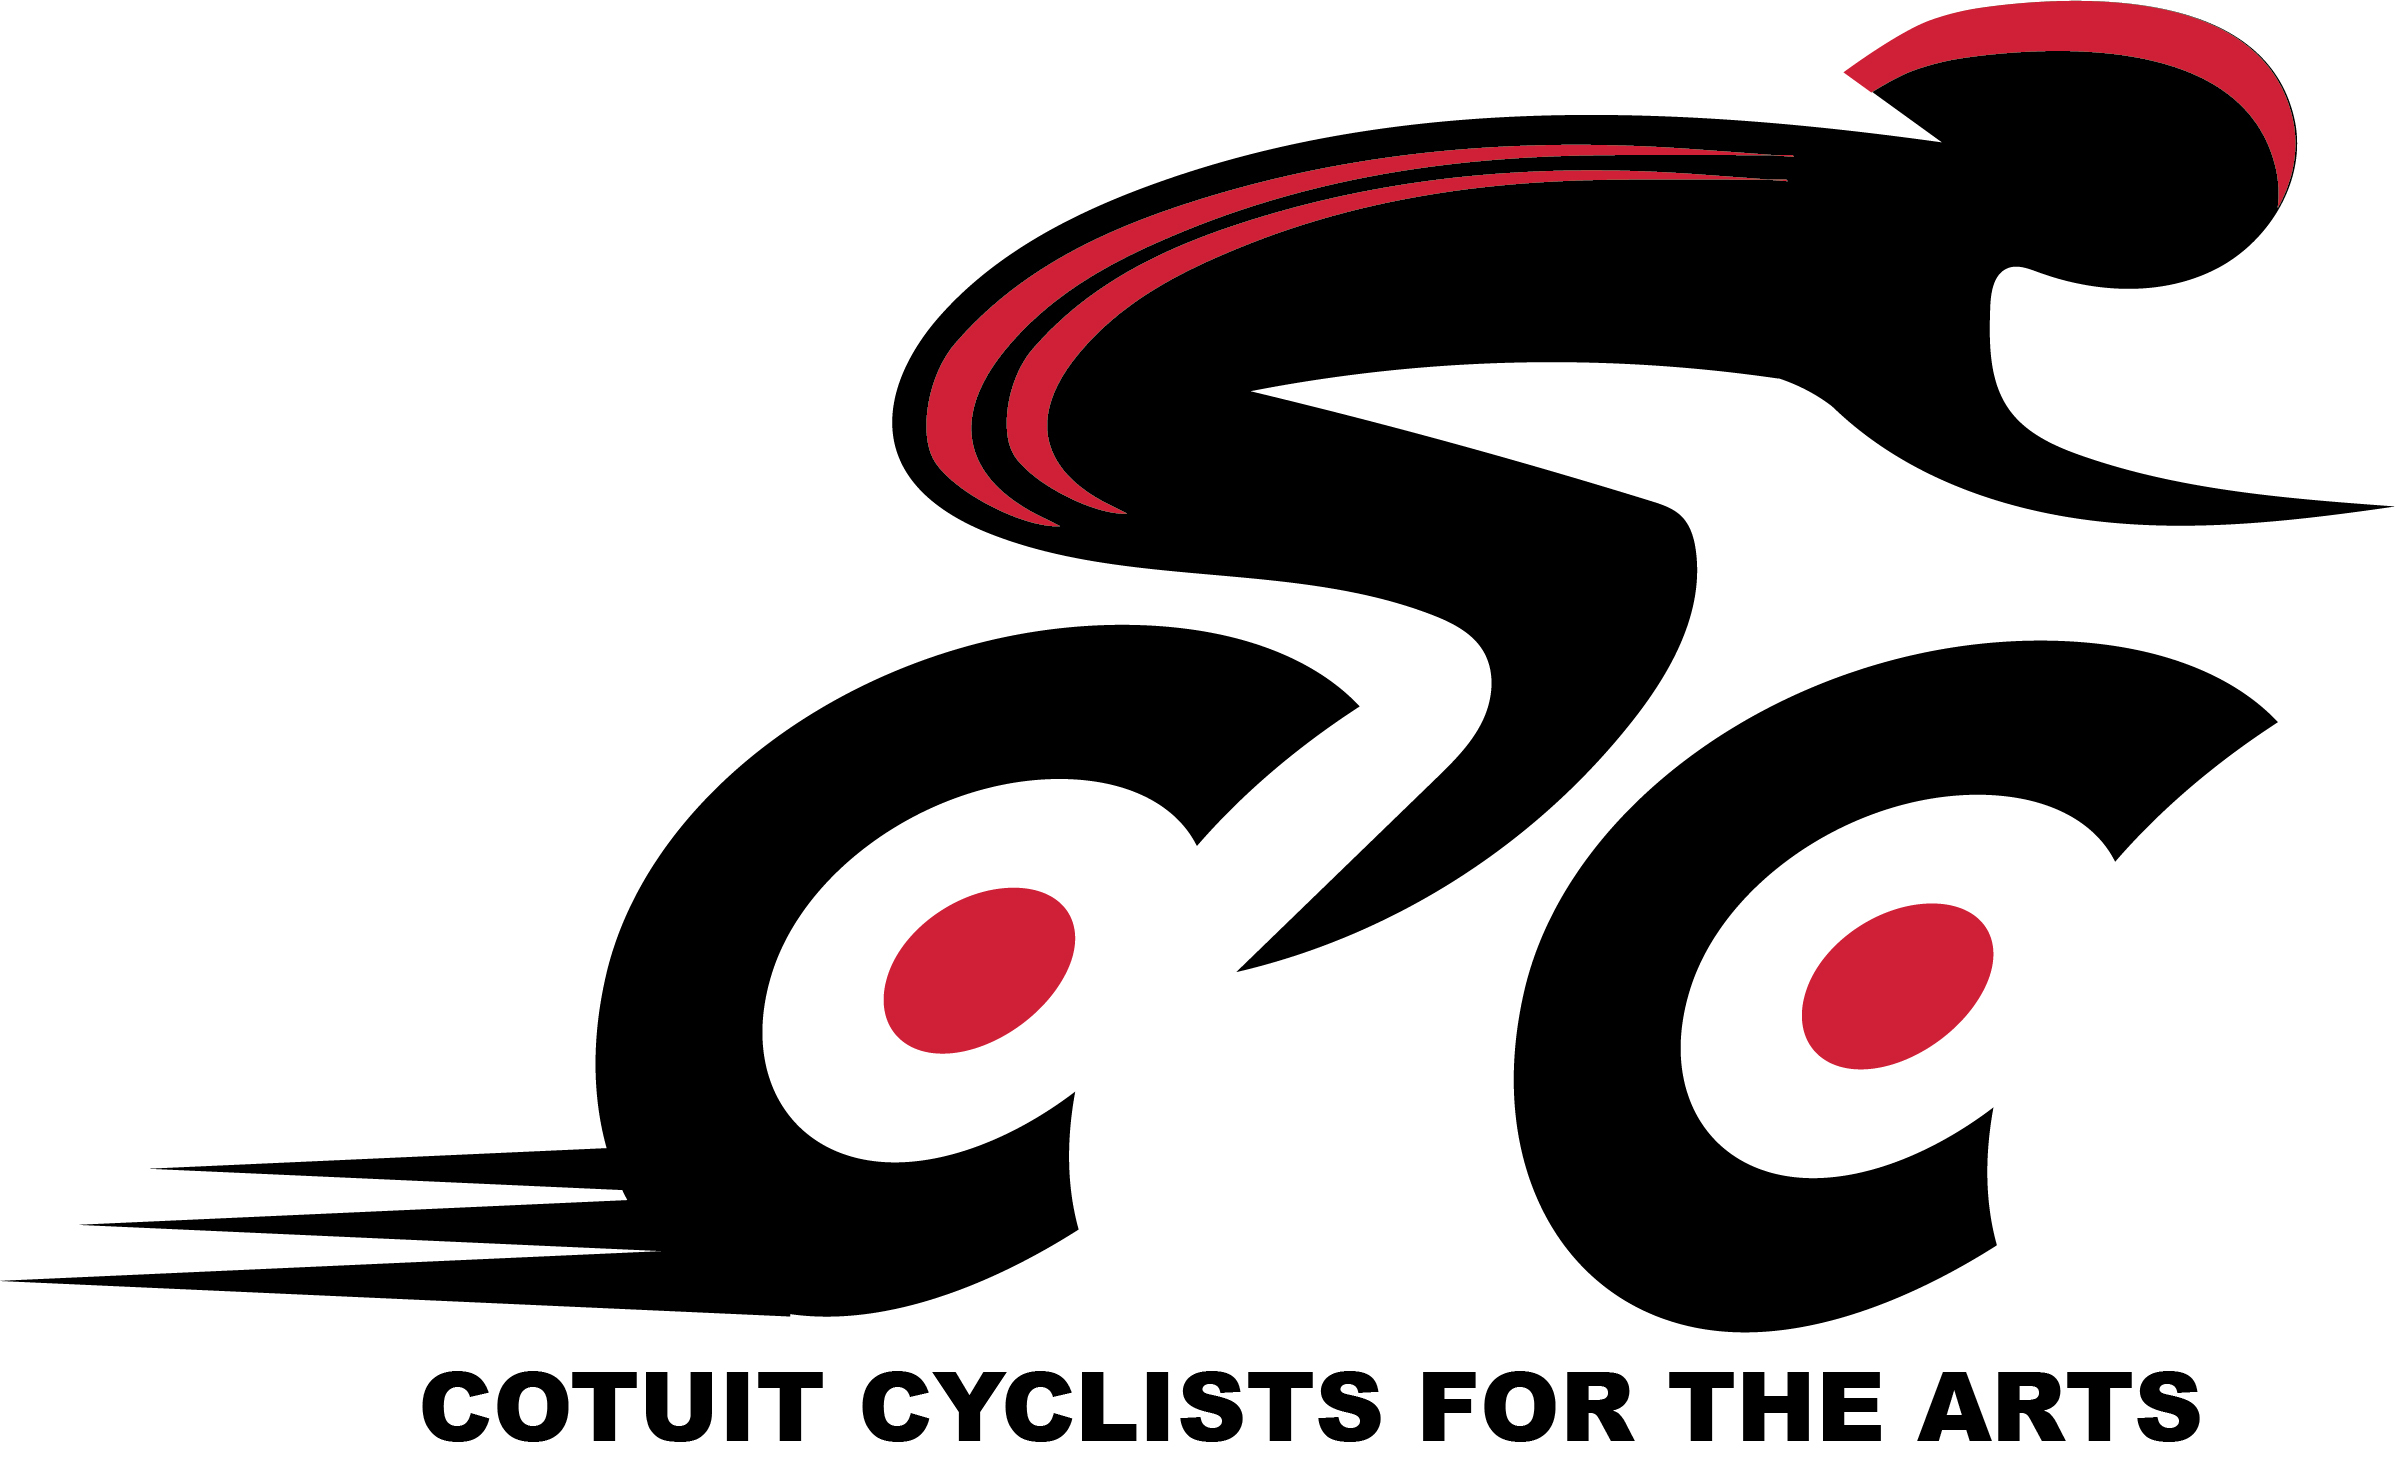 Ccfta bike logo motion